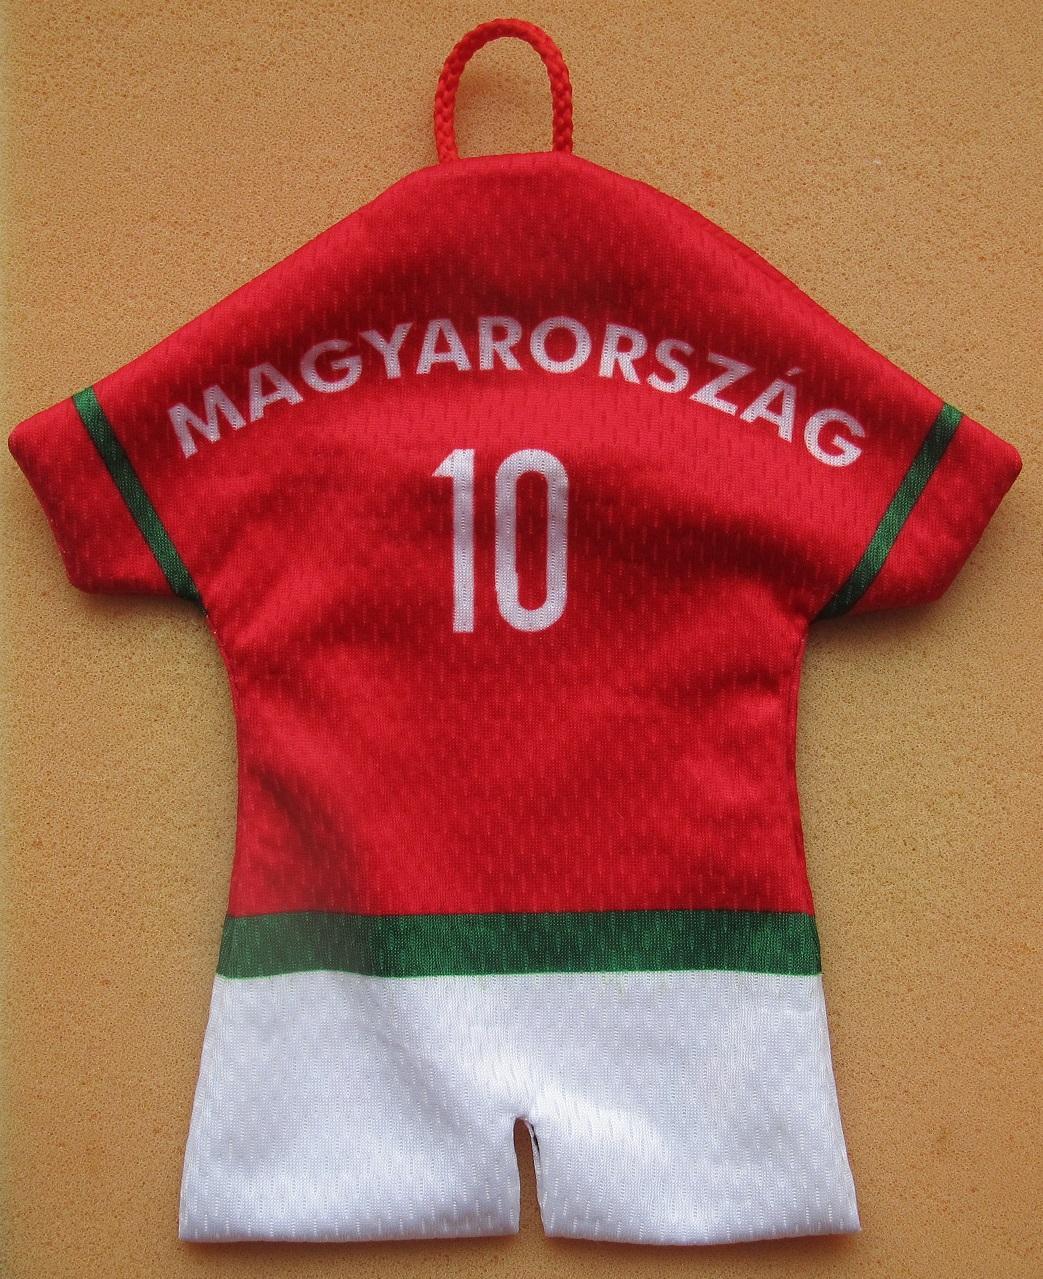 мини майка сборная Венгрия + знак федерации футбола 1